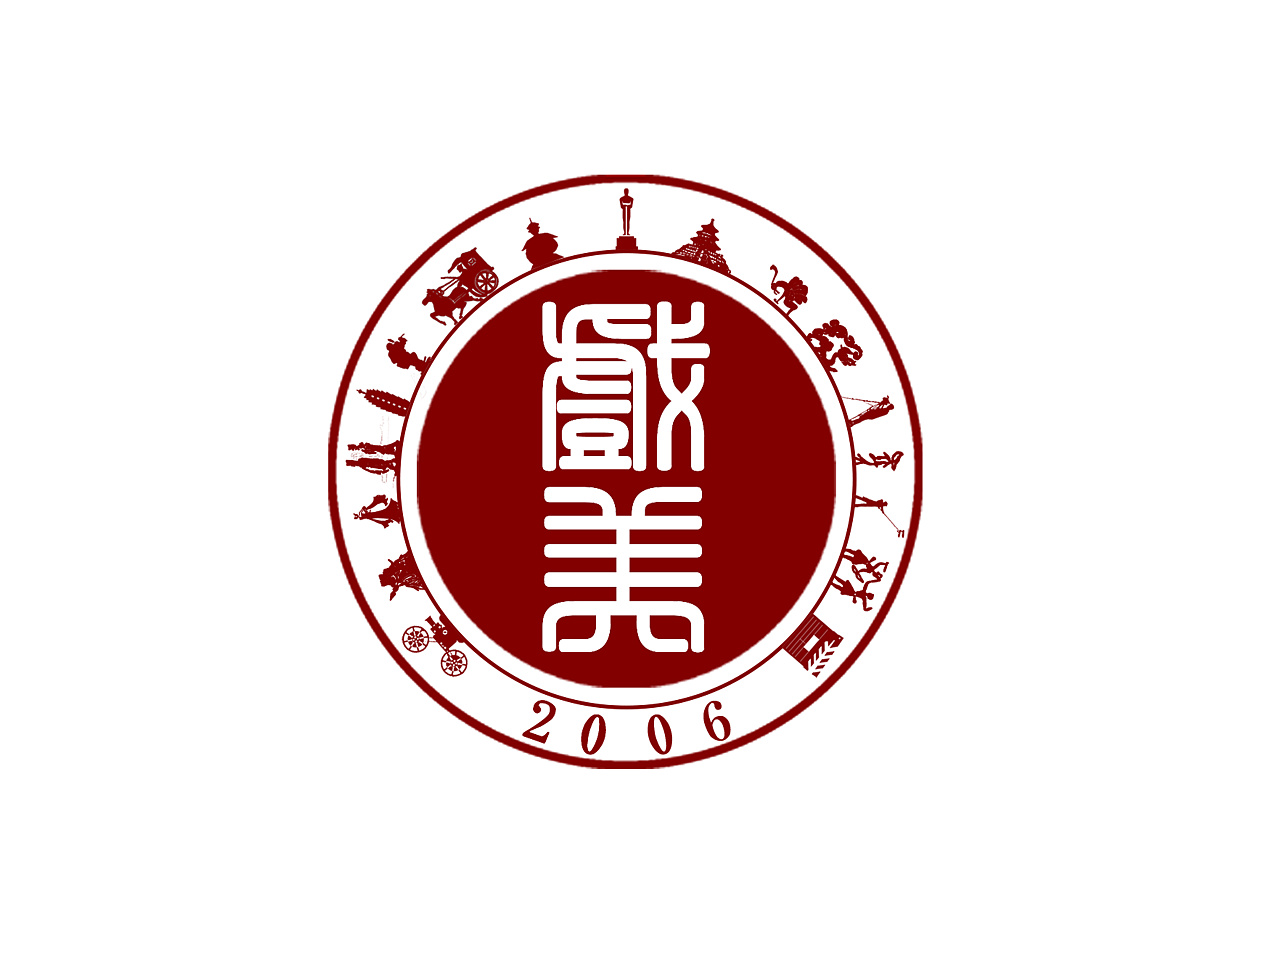 历史学科logo设计图片